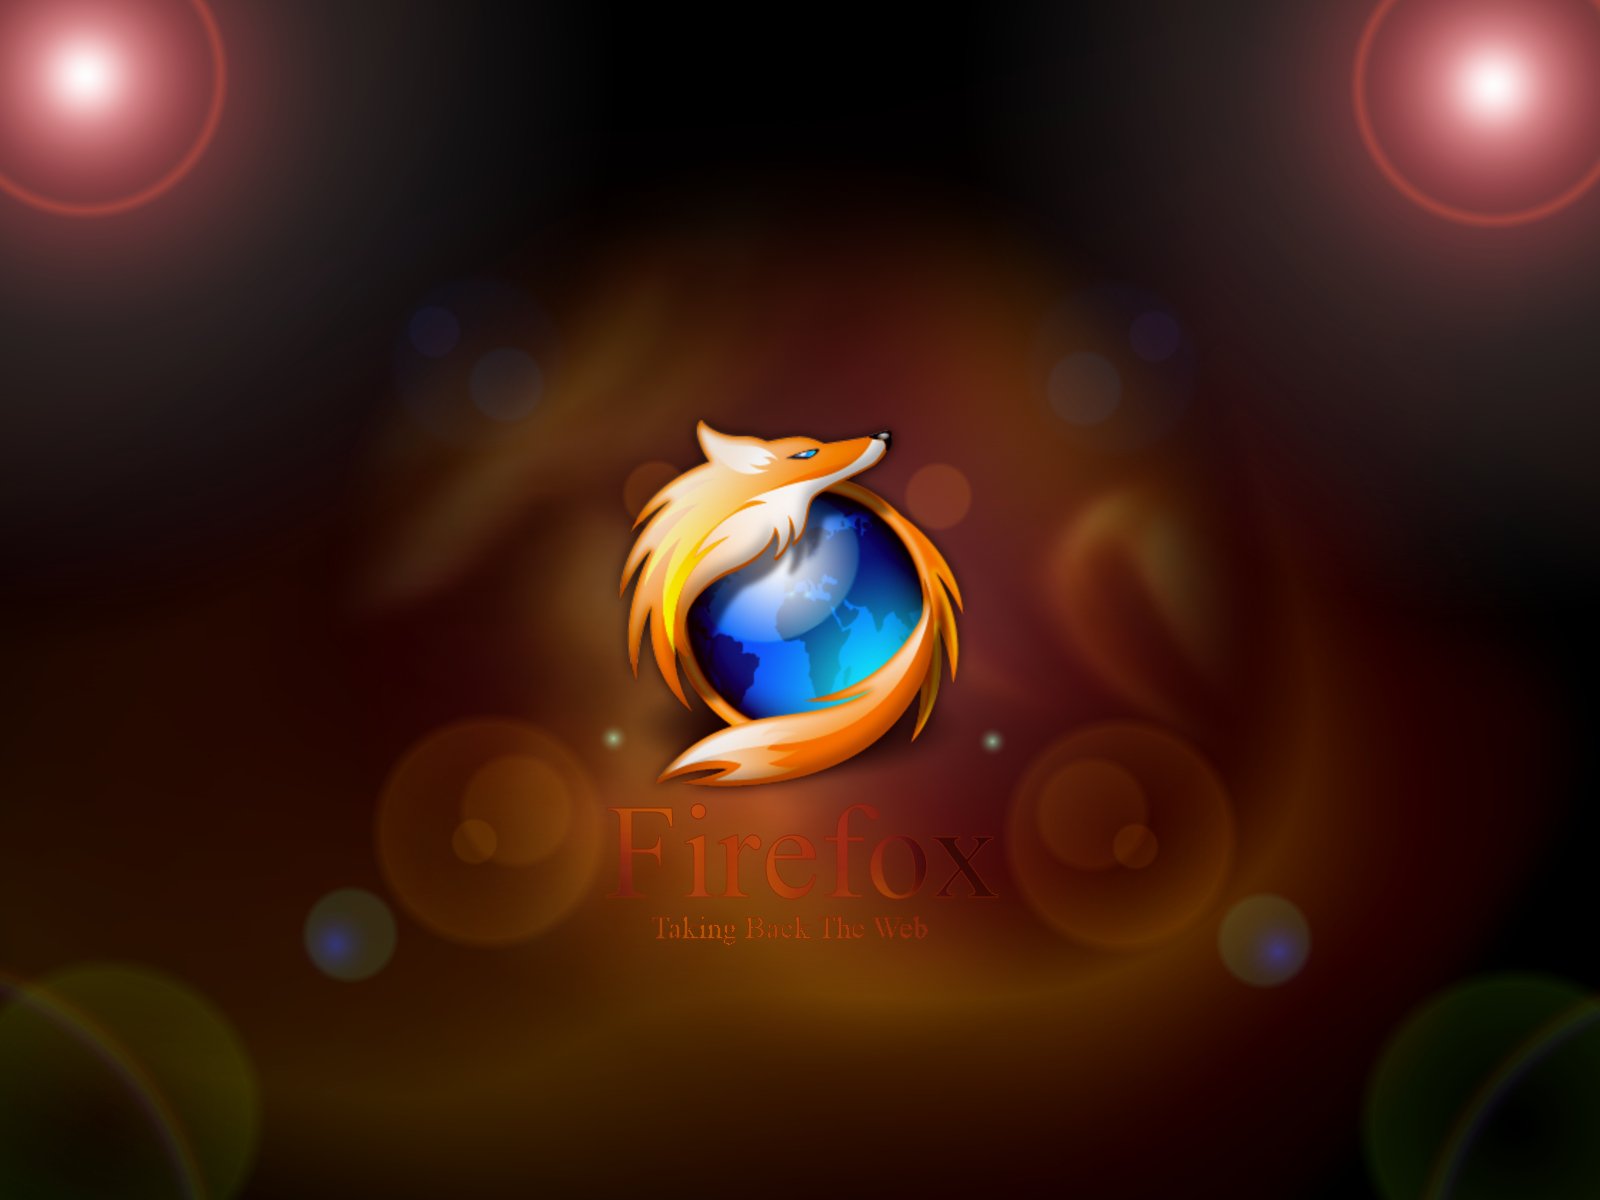 50+ Wallpaper au look du logo Firefox